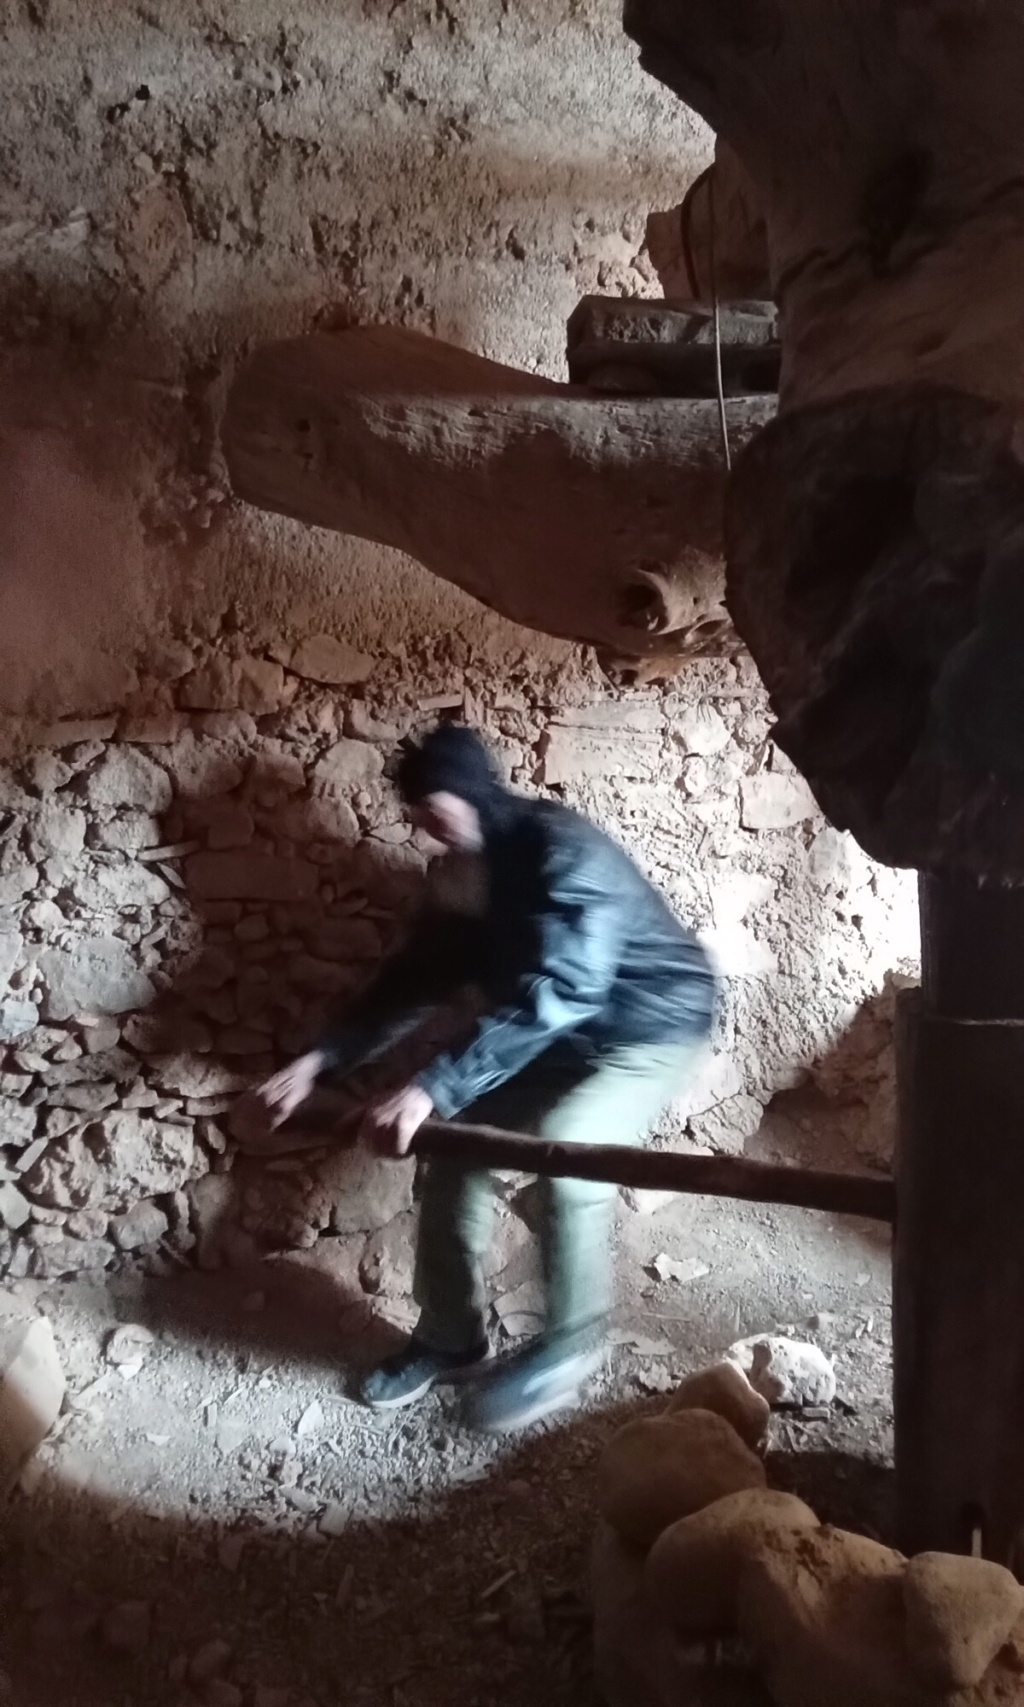 Maroc: visiter les greniers collectifs au Sud de l'Atlas Img_2466